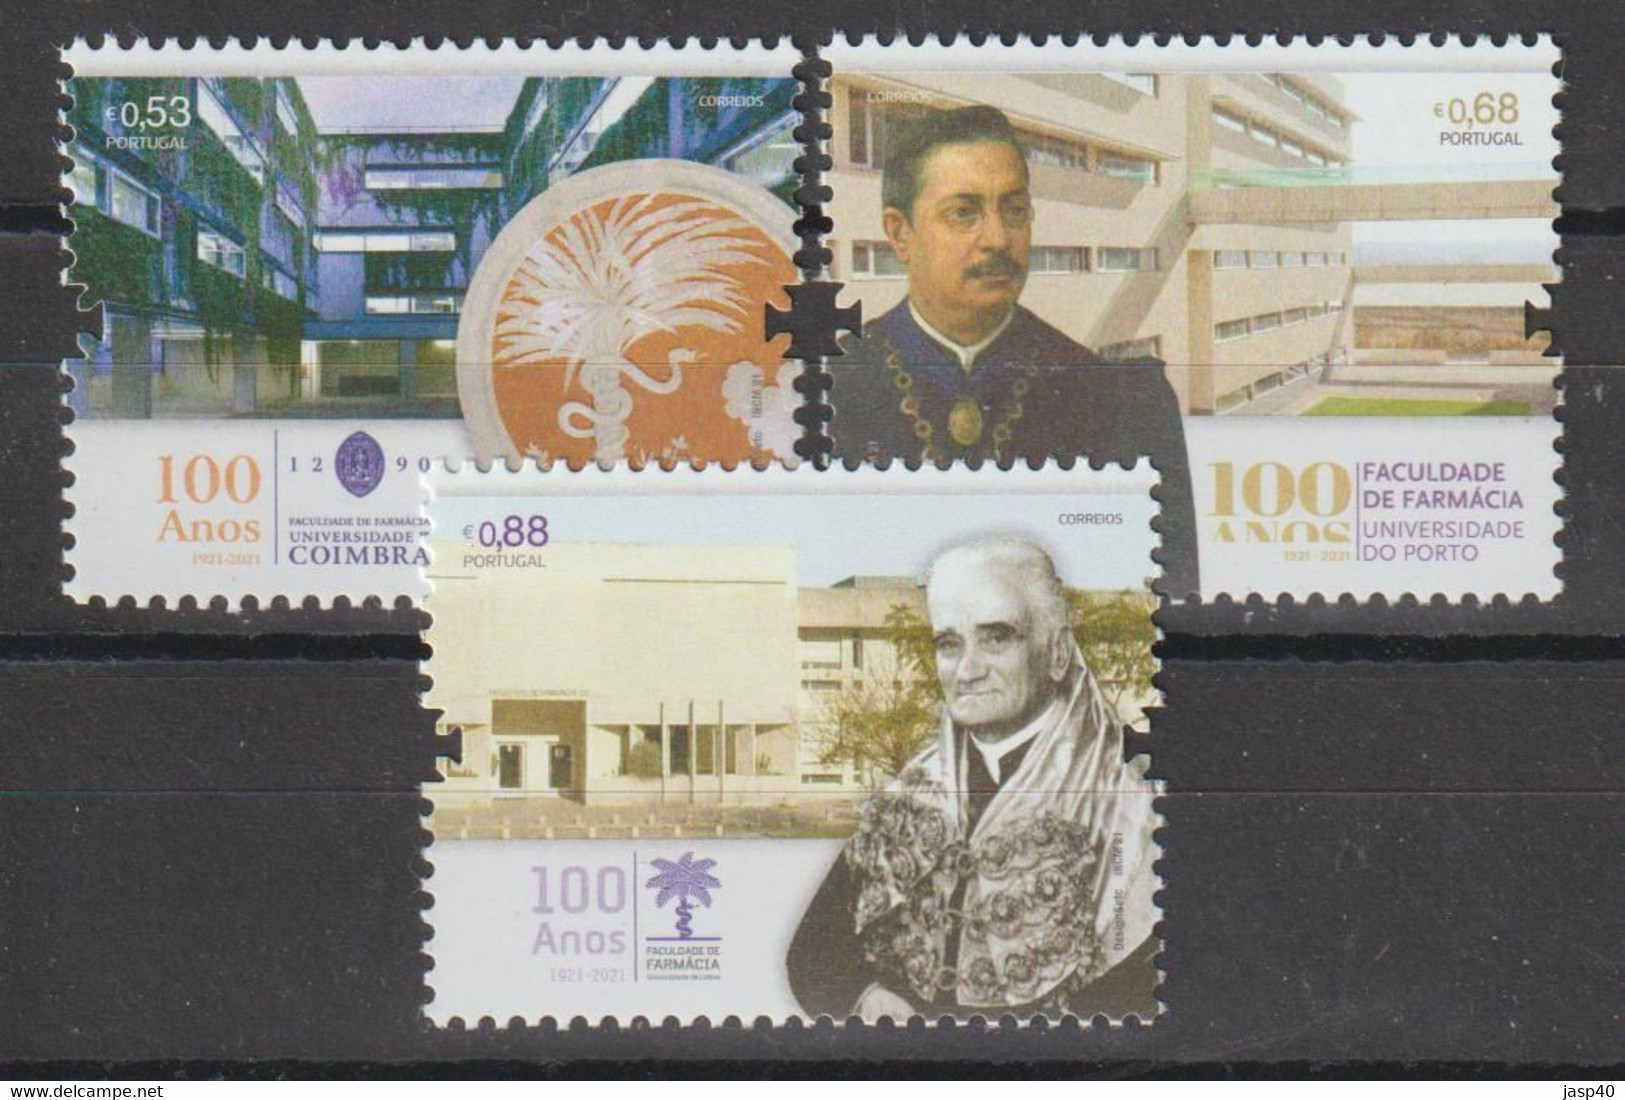 PORTUGAL - 100 ANOS DA FACULDADE DE FARMACIA - Used Stamps